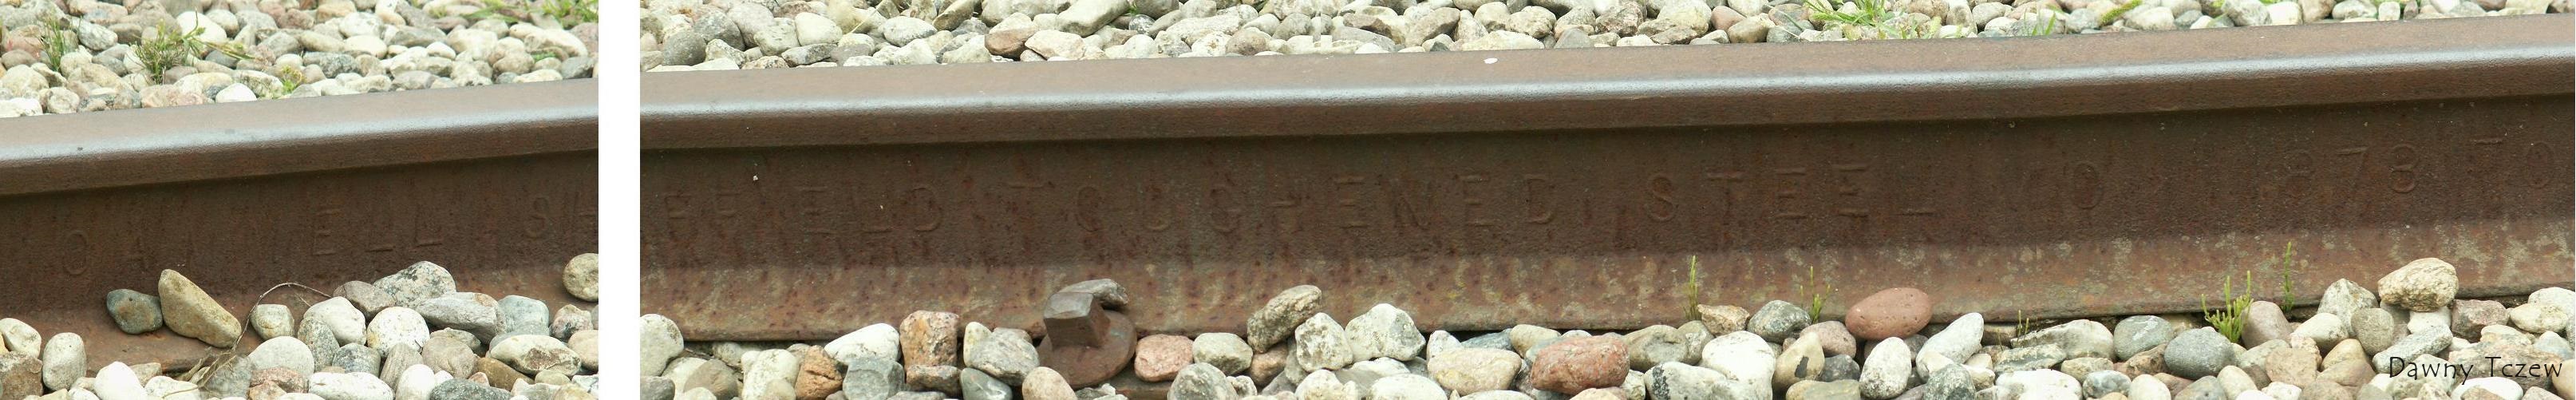 Cammel Sheffield Toughened Steel<br />należąca do firmy Charles Cammell and Co z Sheffield walcownia w Dronfield w hrabstwie Derbyshire, założona w 1870 r. przez Wilsona Cammel'a. Od 1883 r. działająca w Workington w hrabstwie Cumberland,  jako Derwent Steel and Iron Works. Była światowym producentem szyn o szczególnie silnej pozycji na kontynencie północnoamerykańskim, gdzie była głównym dostawcą Central Pacific Railroad.